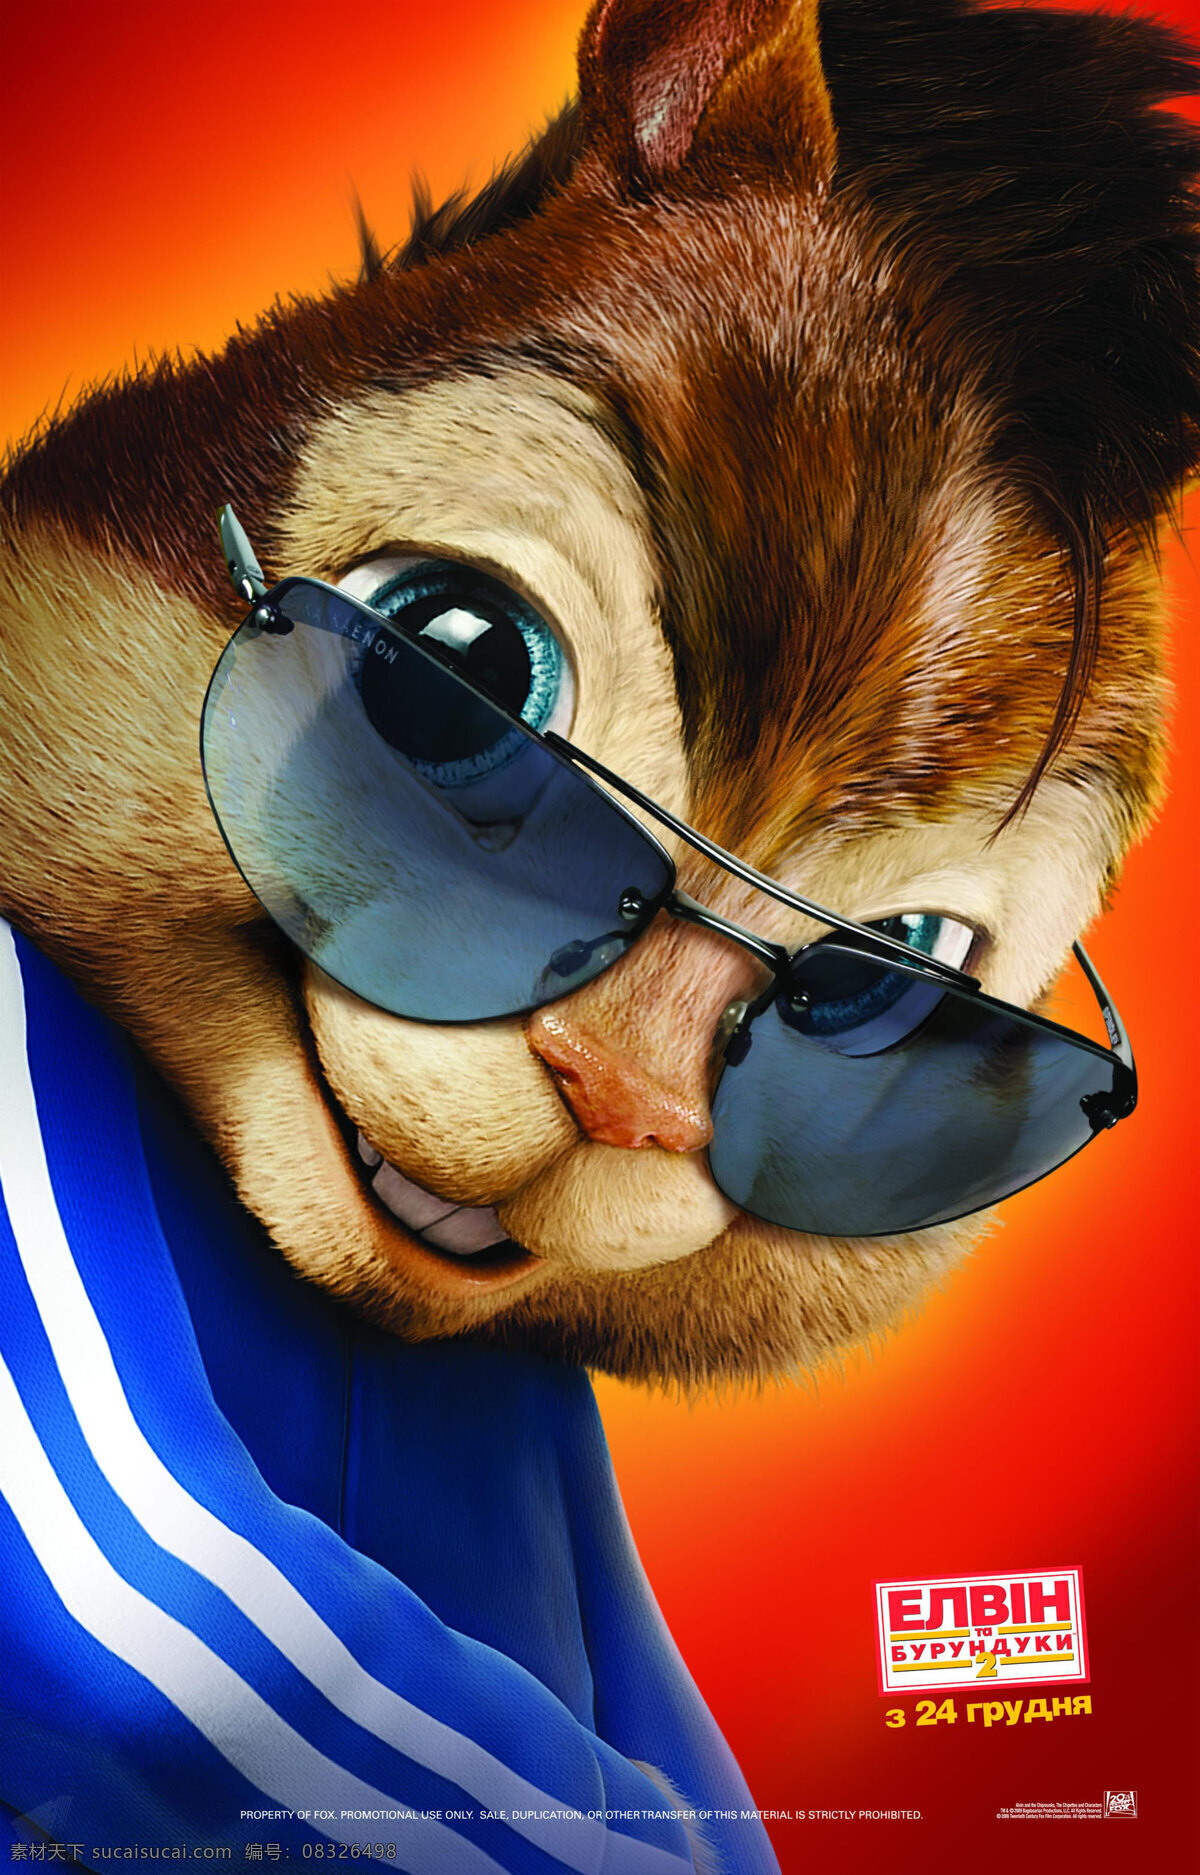 鼠来宝2 高清晰海报 角色版 艾尔 文 花 栗 鼠 花鼠 明星 俱乐部 艺高鼠胆大 好莱坞 梦工厂 卡通 动画 可爱 美国 3d动画 电影海报 影视娱乐 文化艺术